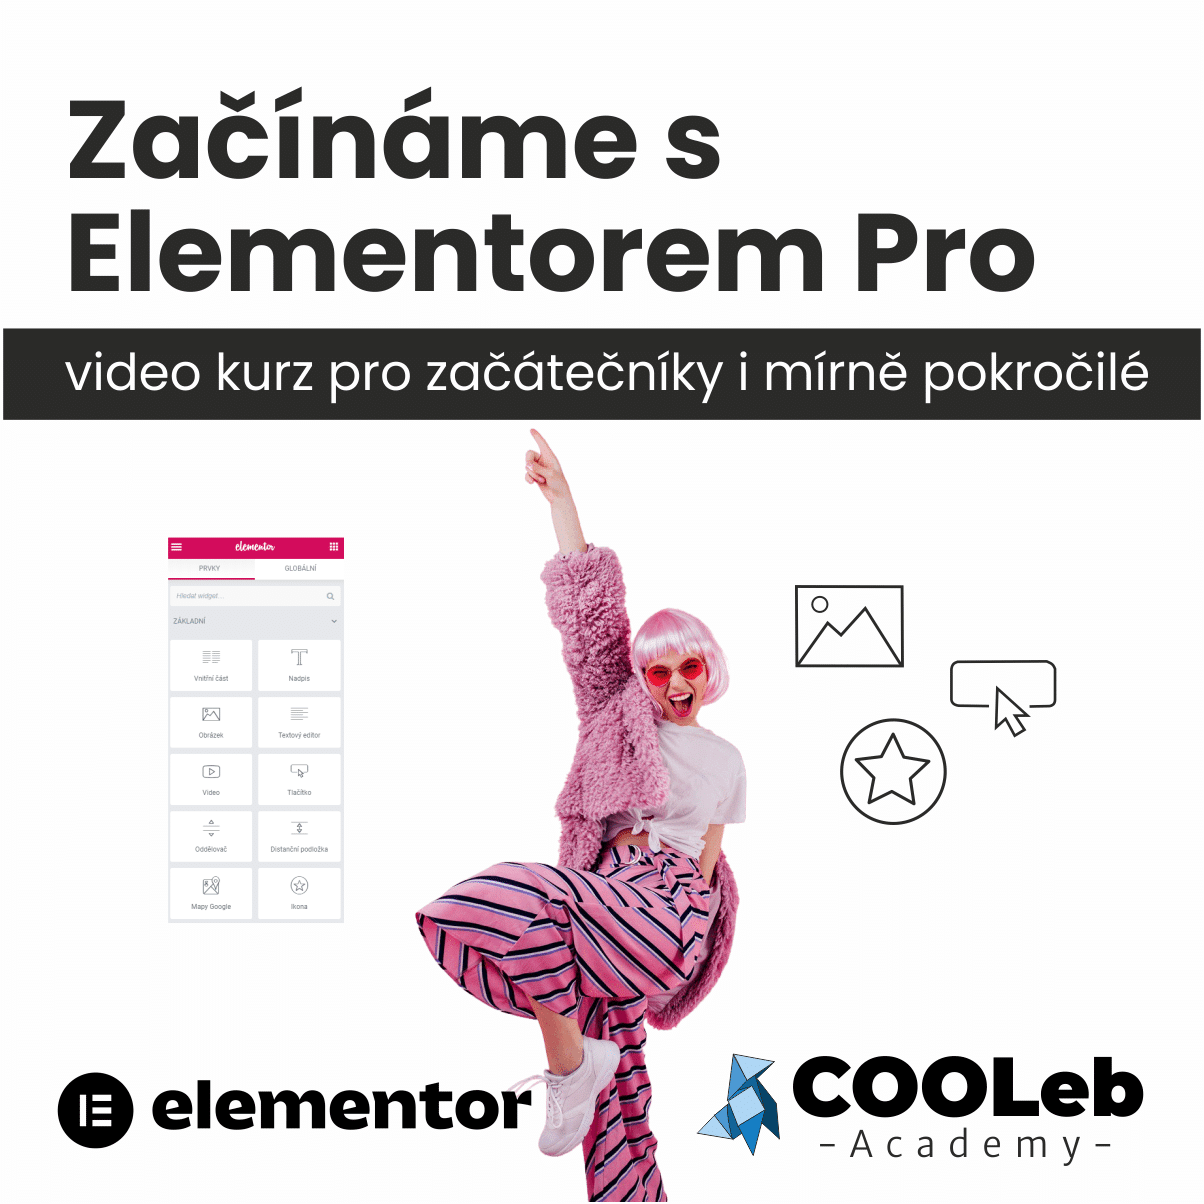 Začínáme s Elementorem Pro video kurz